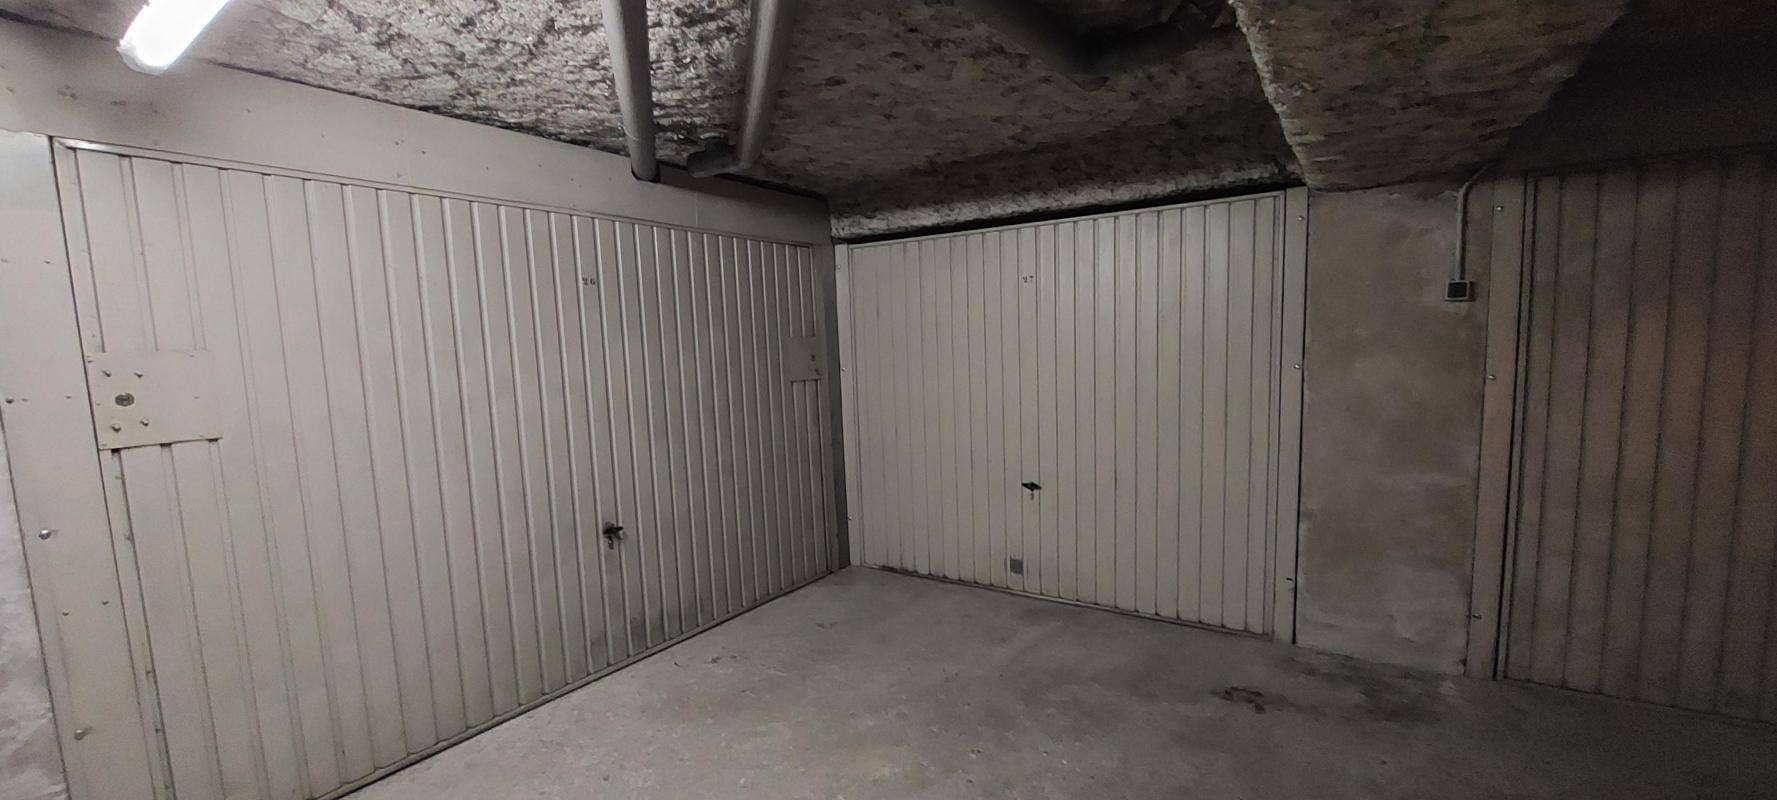 Location Garage / Parking à Lyon 2e arrondissement 0 pièce